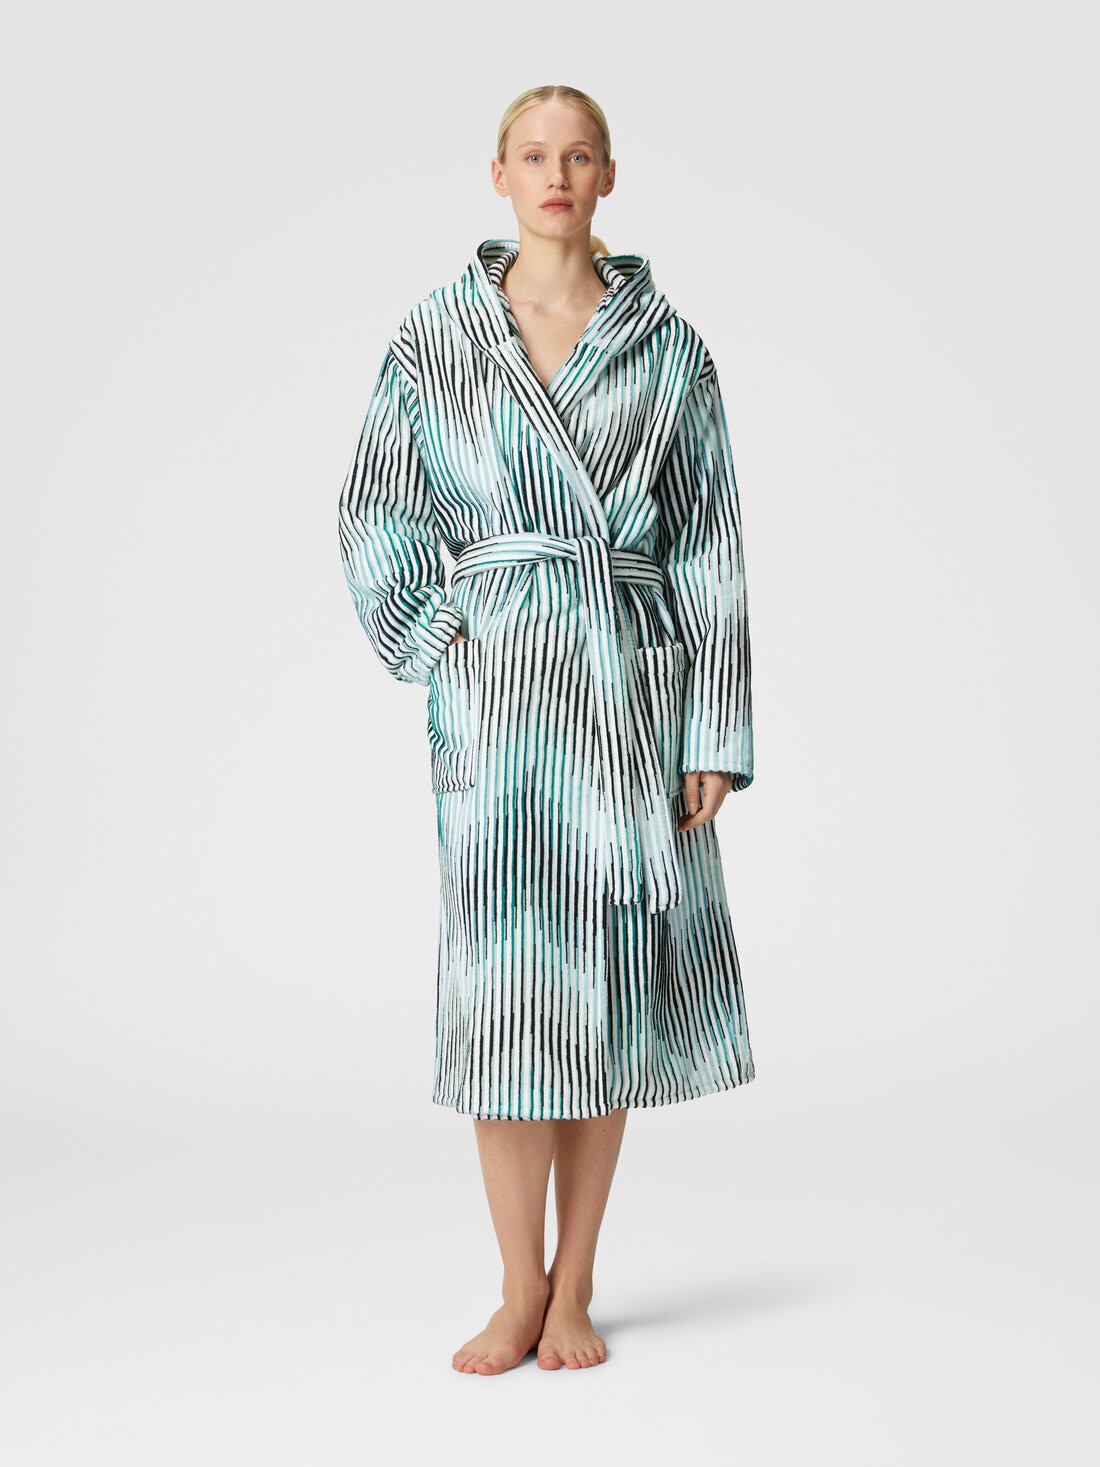 Arpeggio bathrobe in slub cotton terry, Turquoise  - 1D3AC99707701 - 1